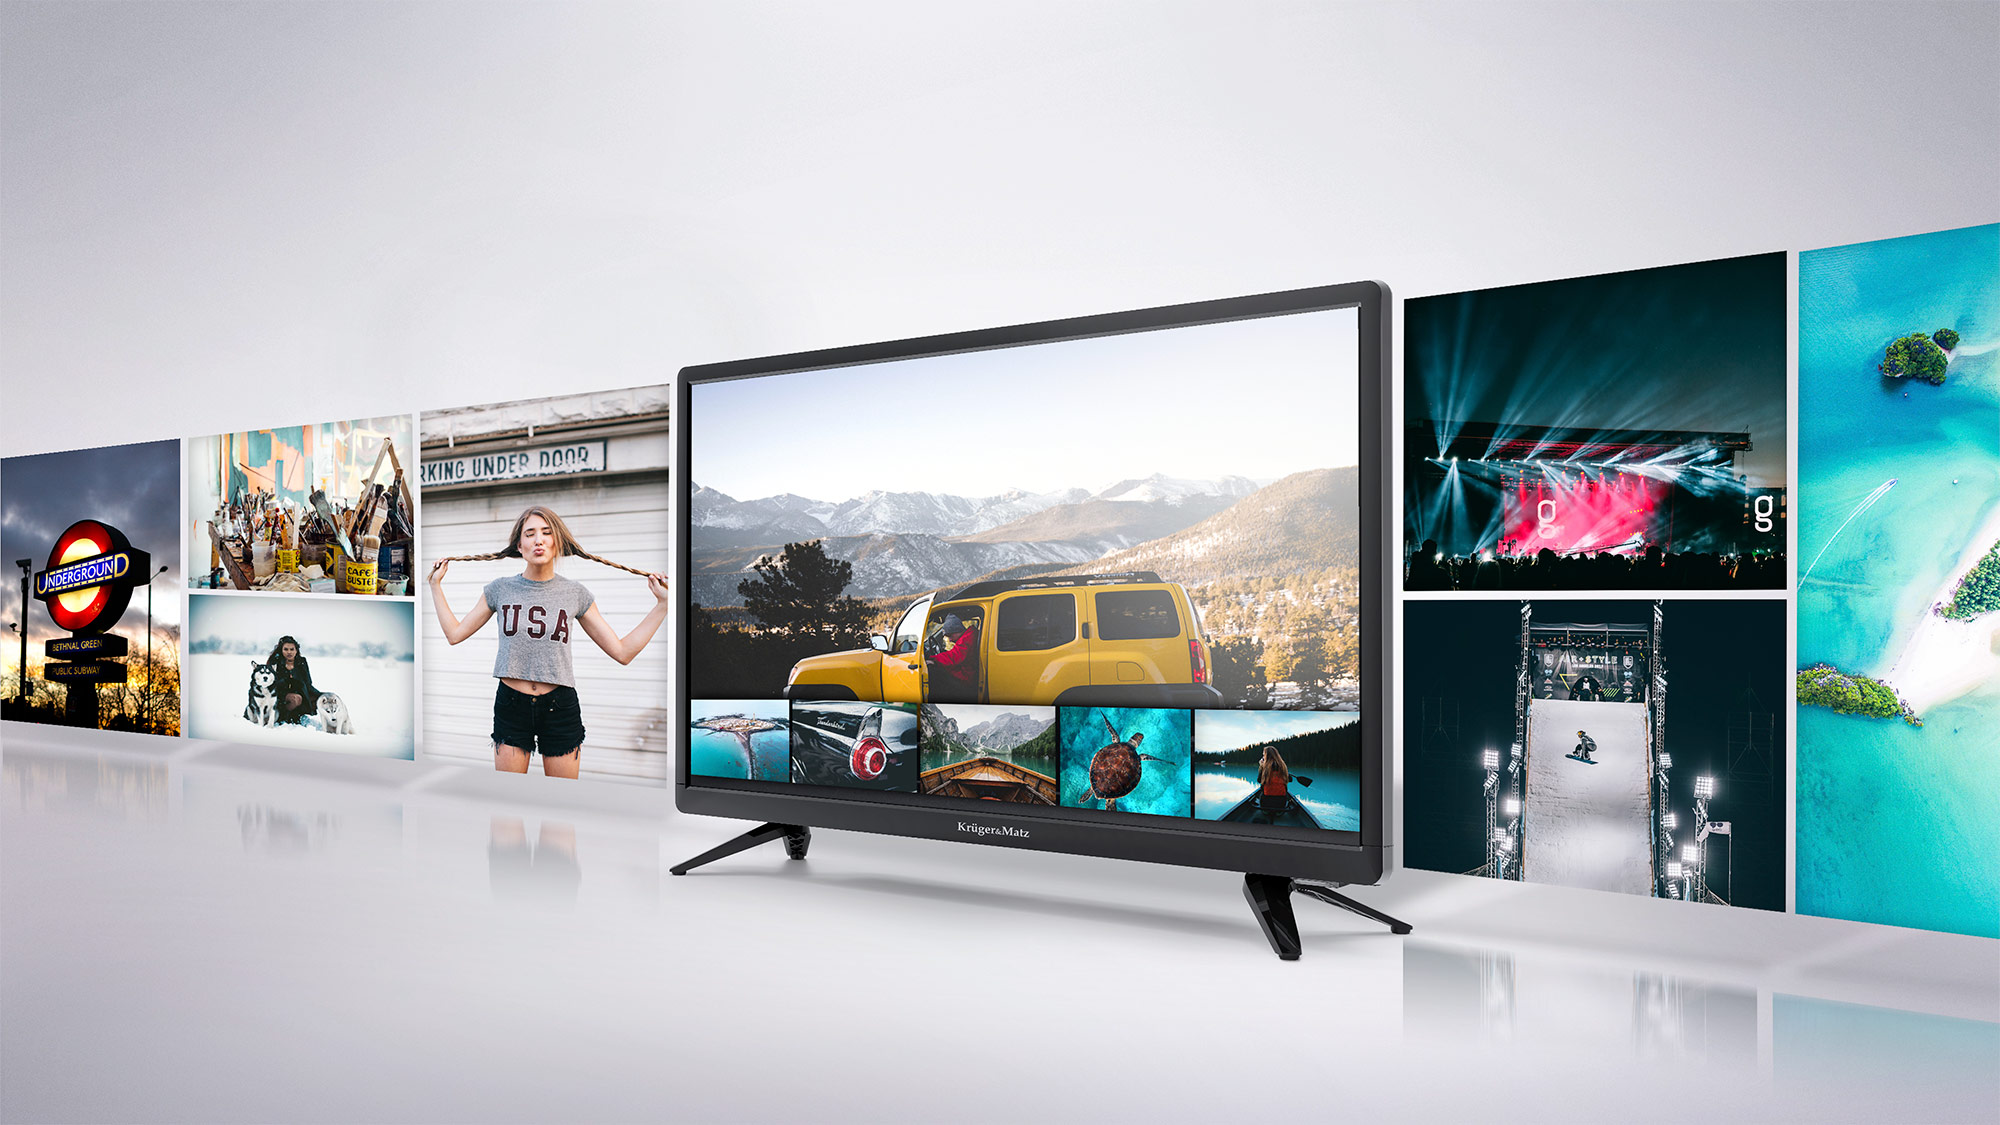 In plus, televizorul tau Kruger&Matz este dotat cu port USB care permite redarea filmelor preferate de pe diverse suporturi media USB, oferind confort si versatilitate.